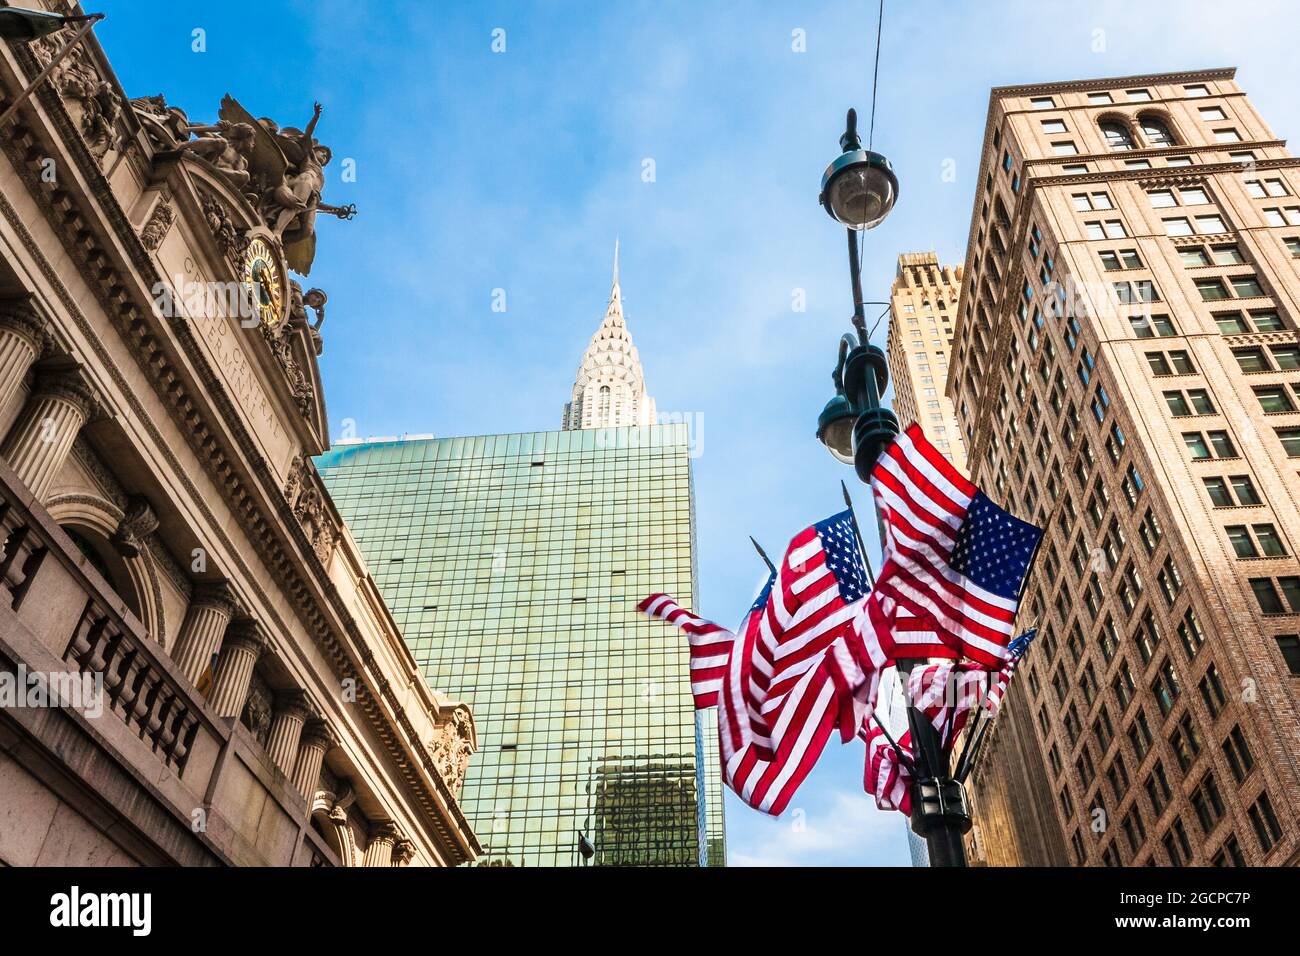 US-Flaggen auf einem Laternenpfosten vor der Grand Central Station (Grand Central Terminus), New York City, NY, USA. Stockfoto